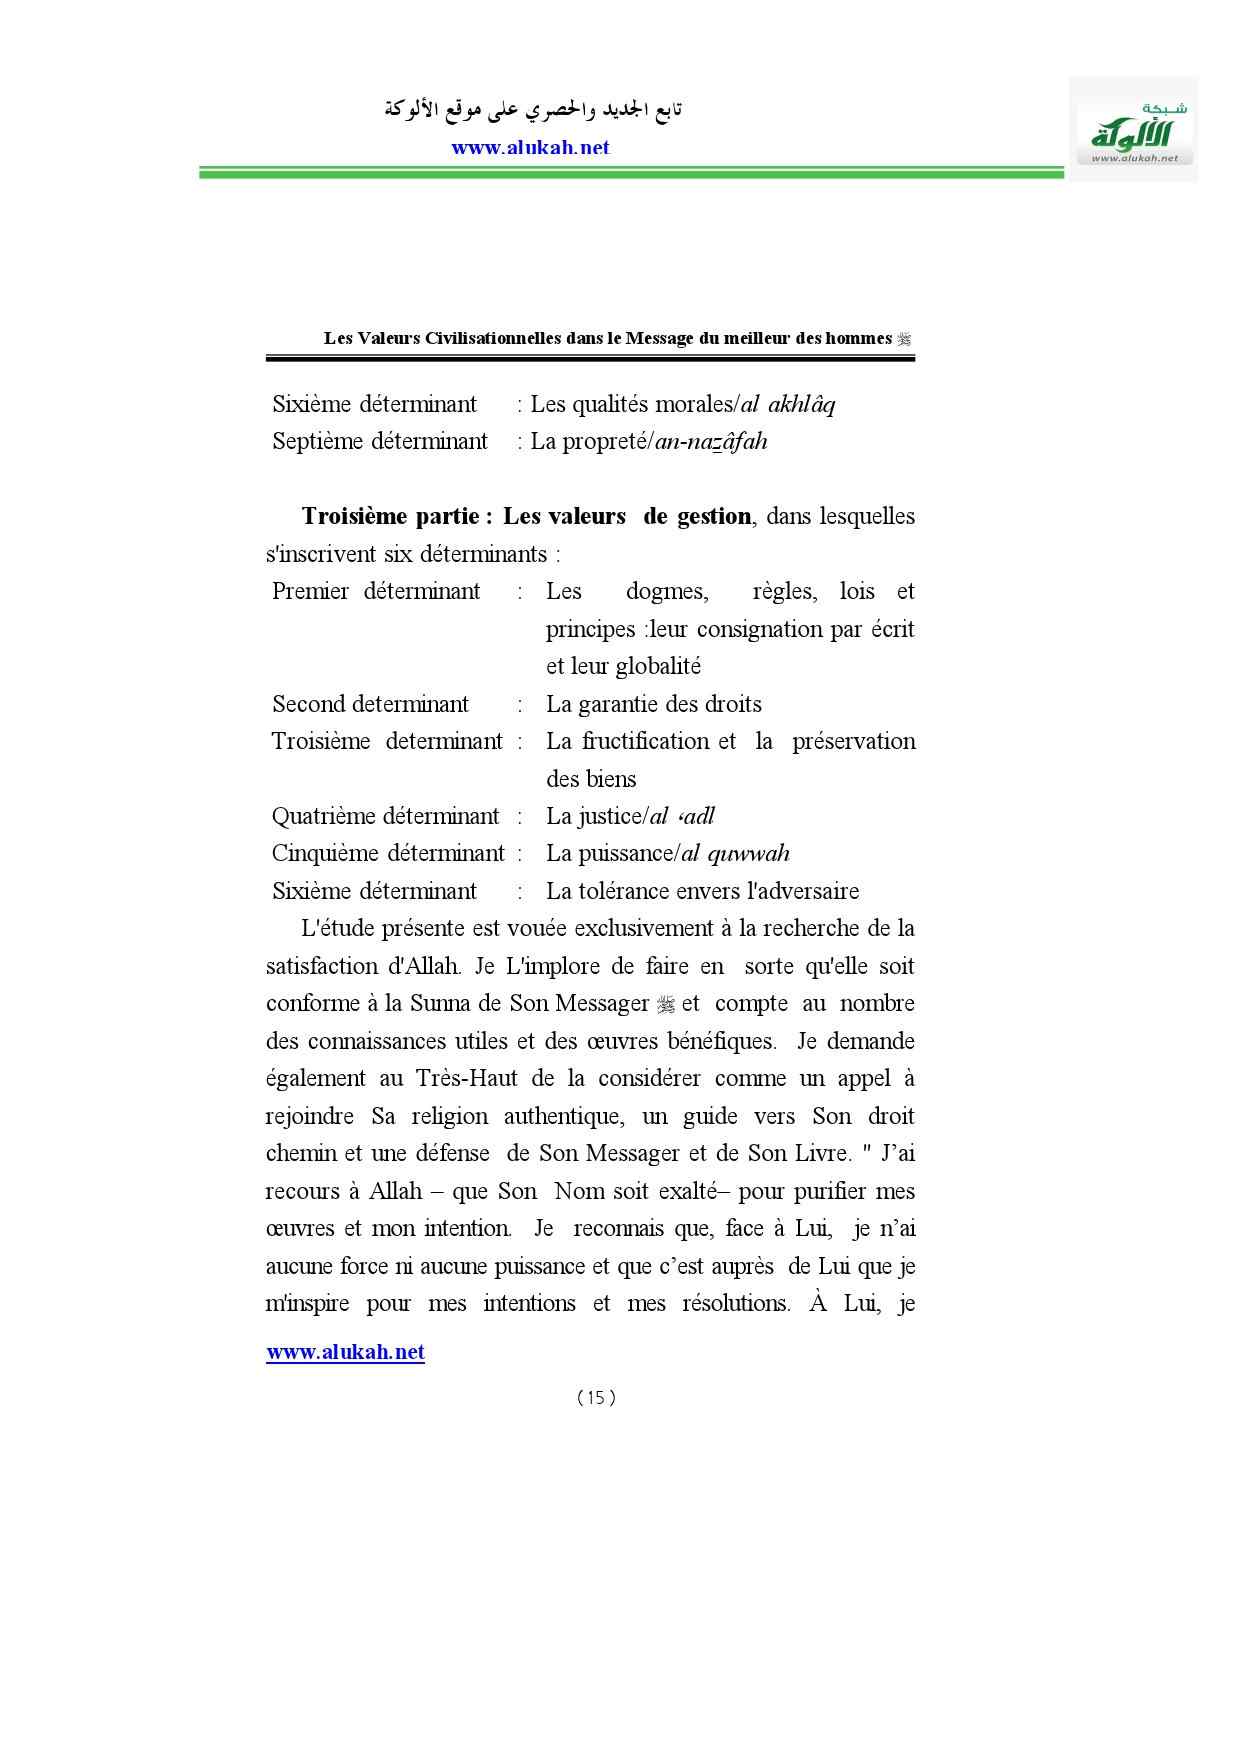 Les_Valeurs_Civilisationnelles_dans_le_Message.pdf, 230-Sayfa 